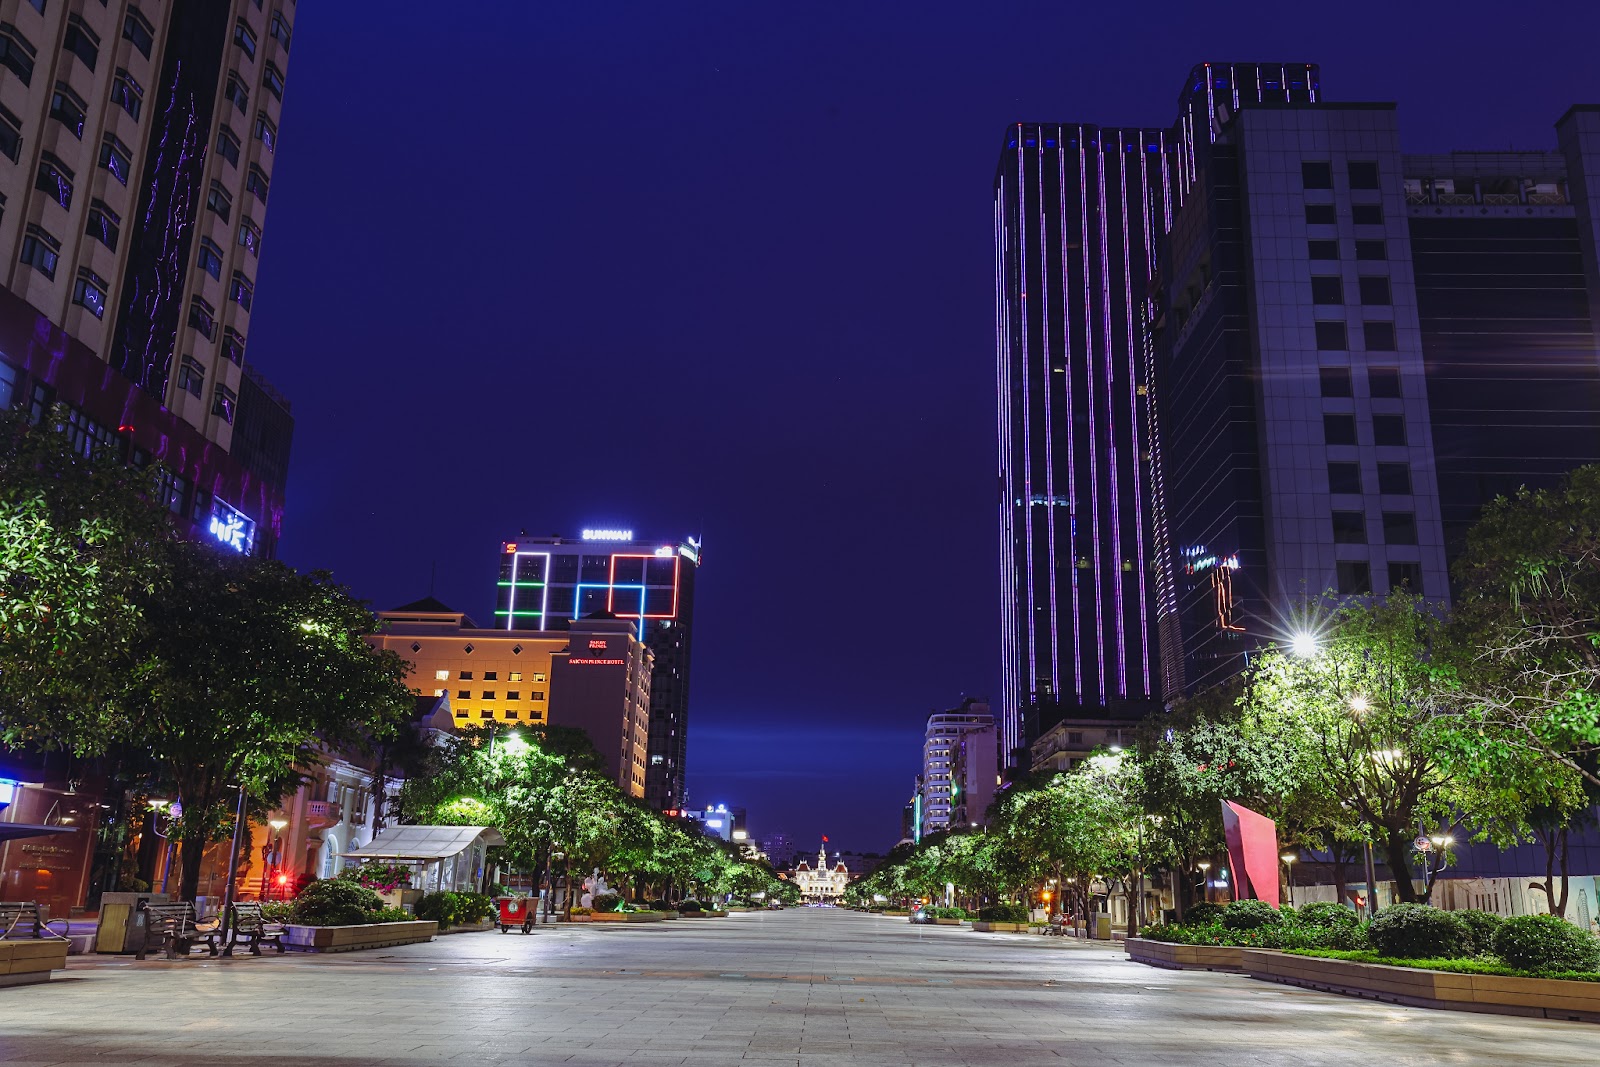 “Bổ túc” đường phố Sài Gòn lúc lên đèn dành cho người ở nhà lâu quá - 4